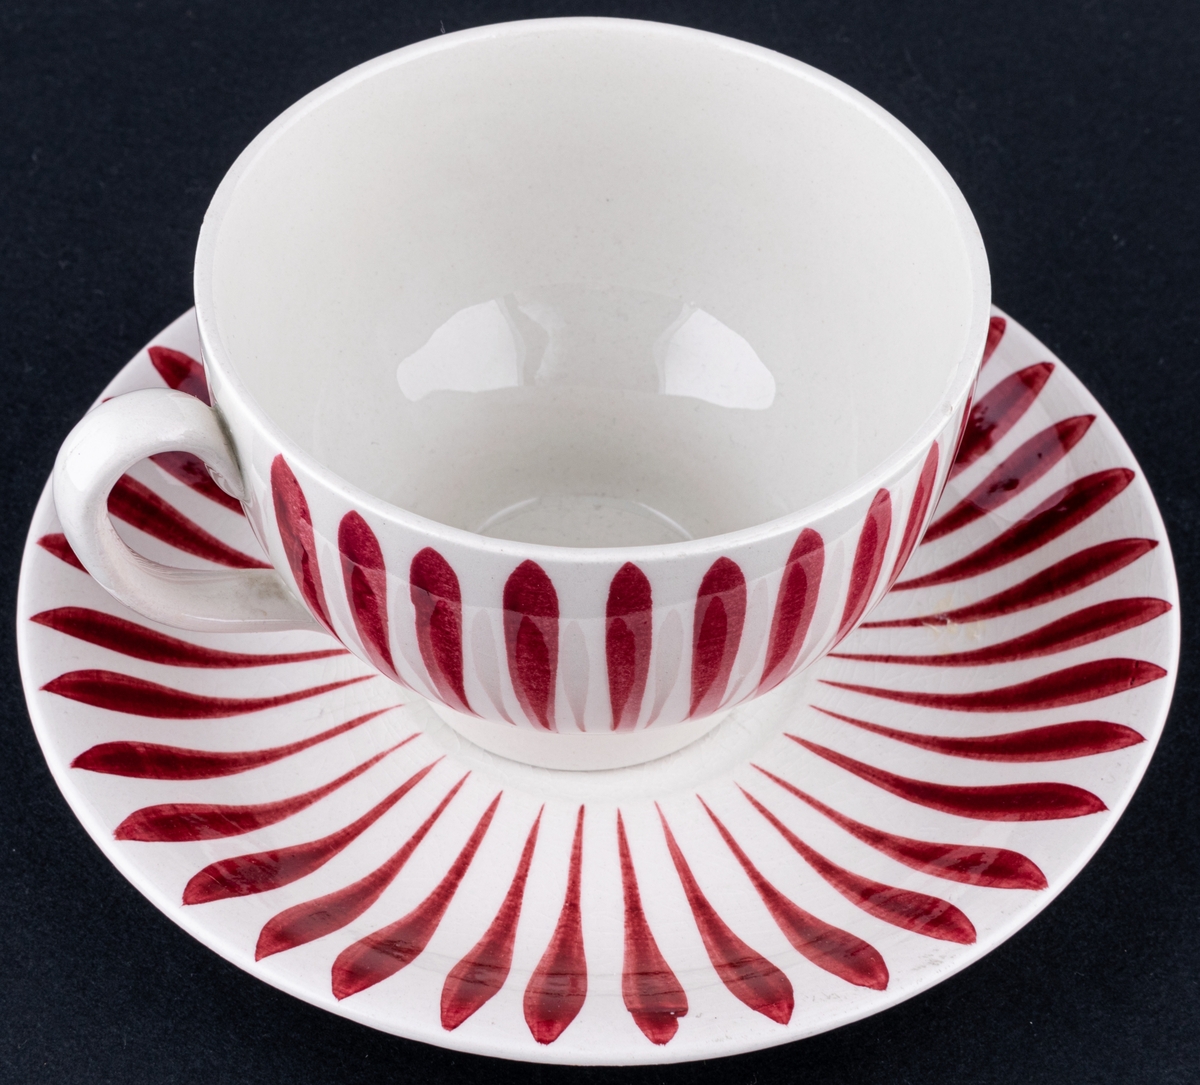 Kaffekopp med fat, modell AX i dekoren Aster. Finns i röd och blå dekor. Dekoren skapad av Eugen Trost. Dekoren runt koppen är i röda vertikala streck och på fatet dito runt brättet.